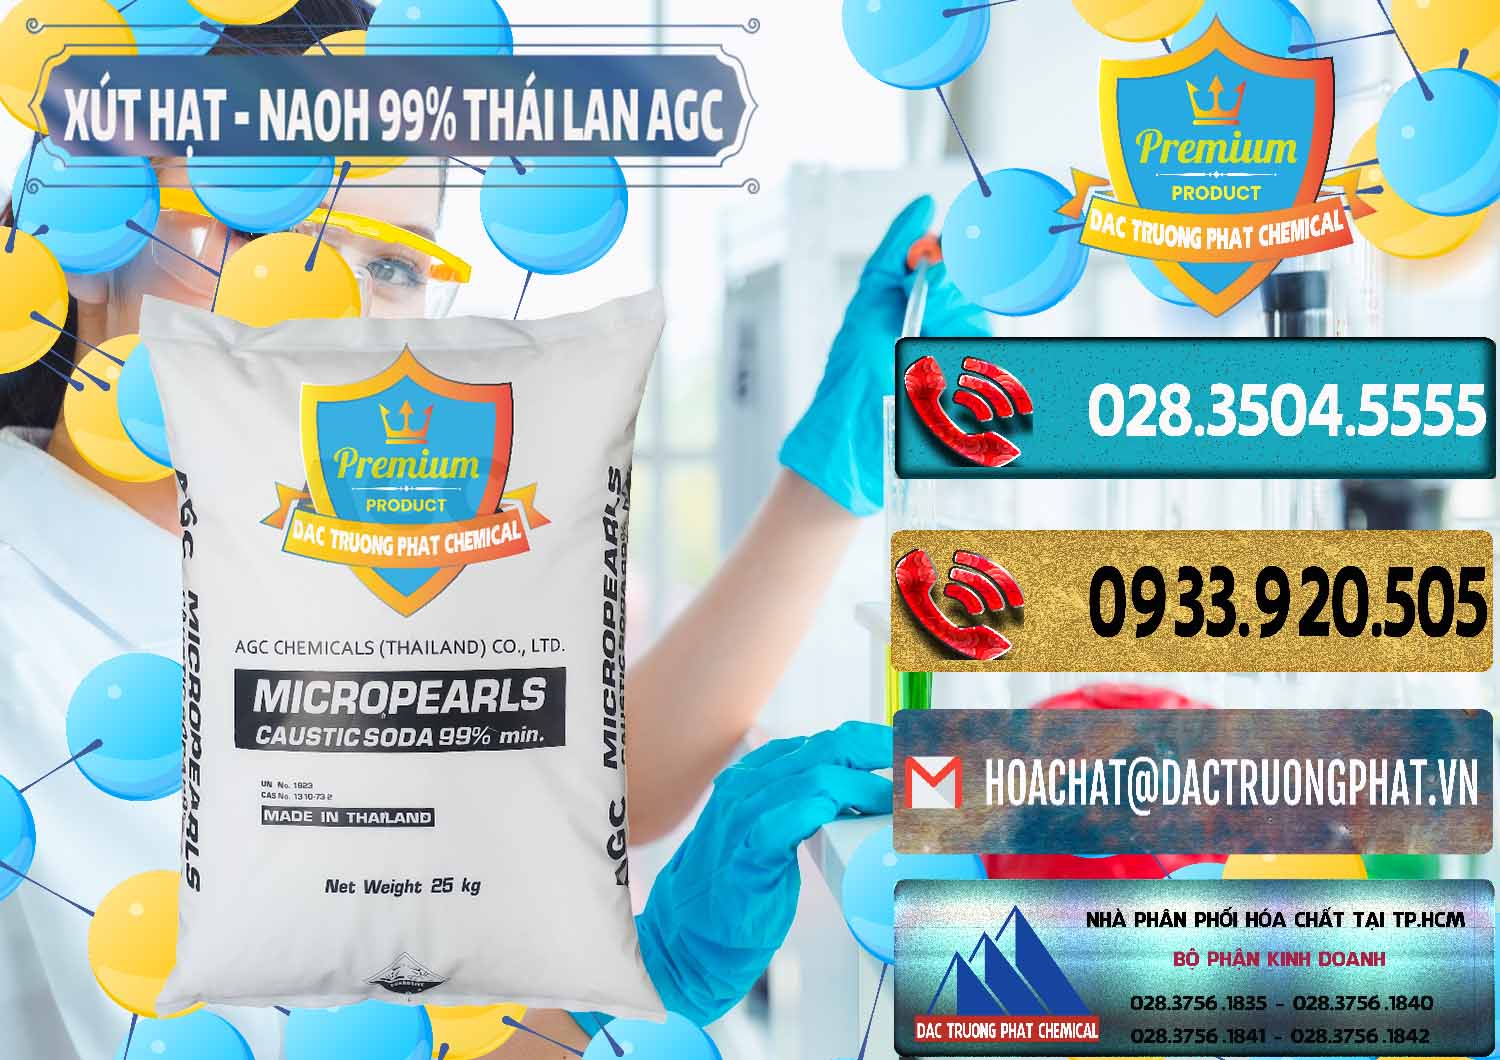 Chuyên bán - cung ứng Xút Hạt - NaOH Bột 99% AGC Thái Lan - 0168 - Nhà phân phối & cung ứng hóa chất tại TP.HCM - hoachatdetnhuom.com